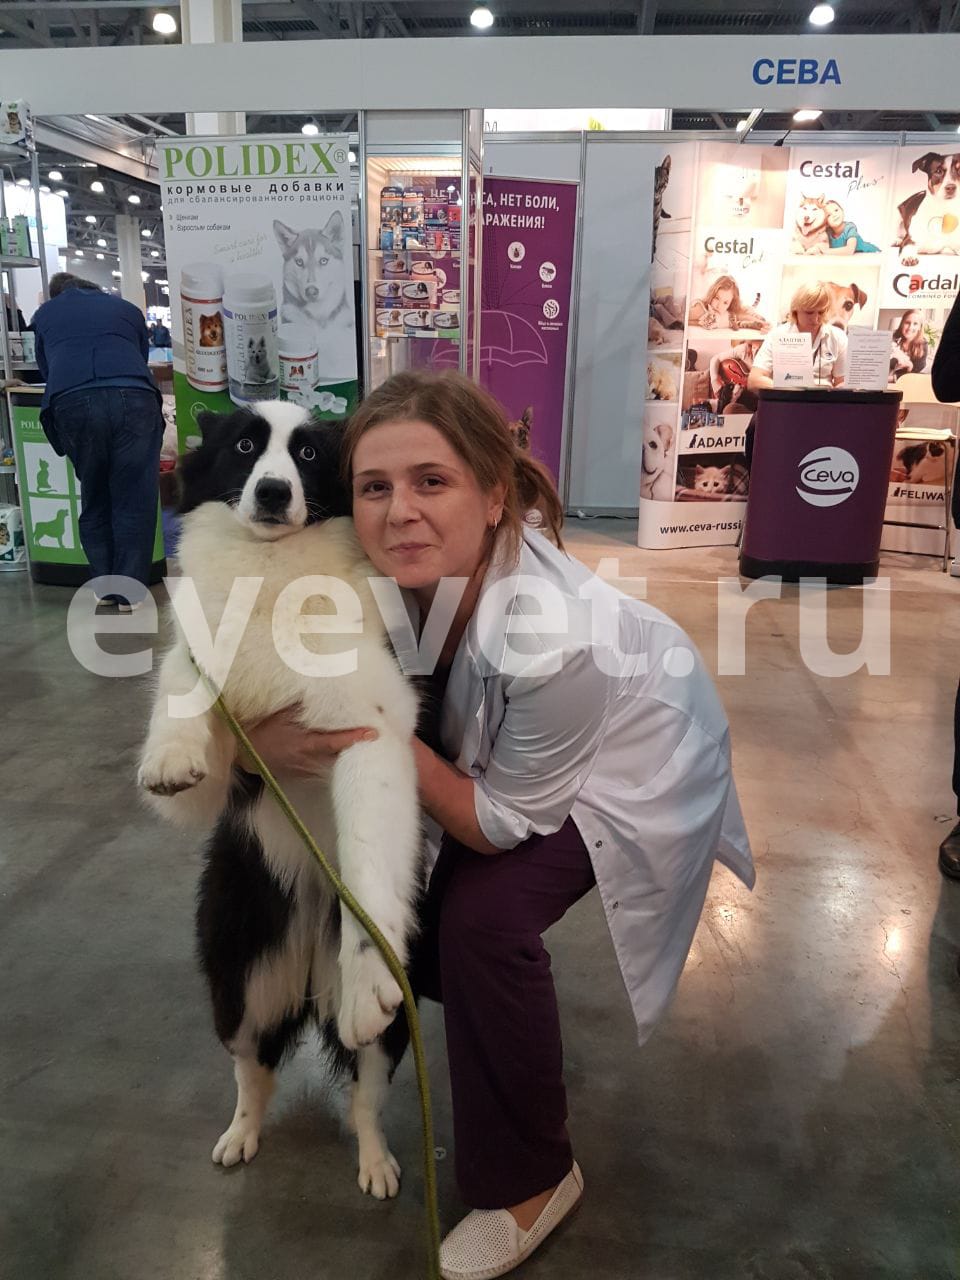 Наши врачи два дня бесплатно консультировали и обследовали собак на выставке «Евразия»